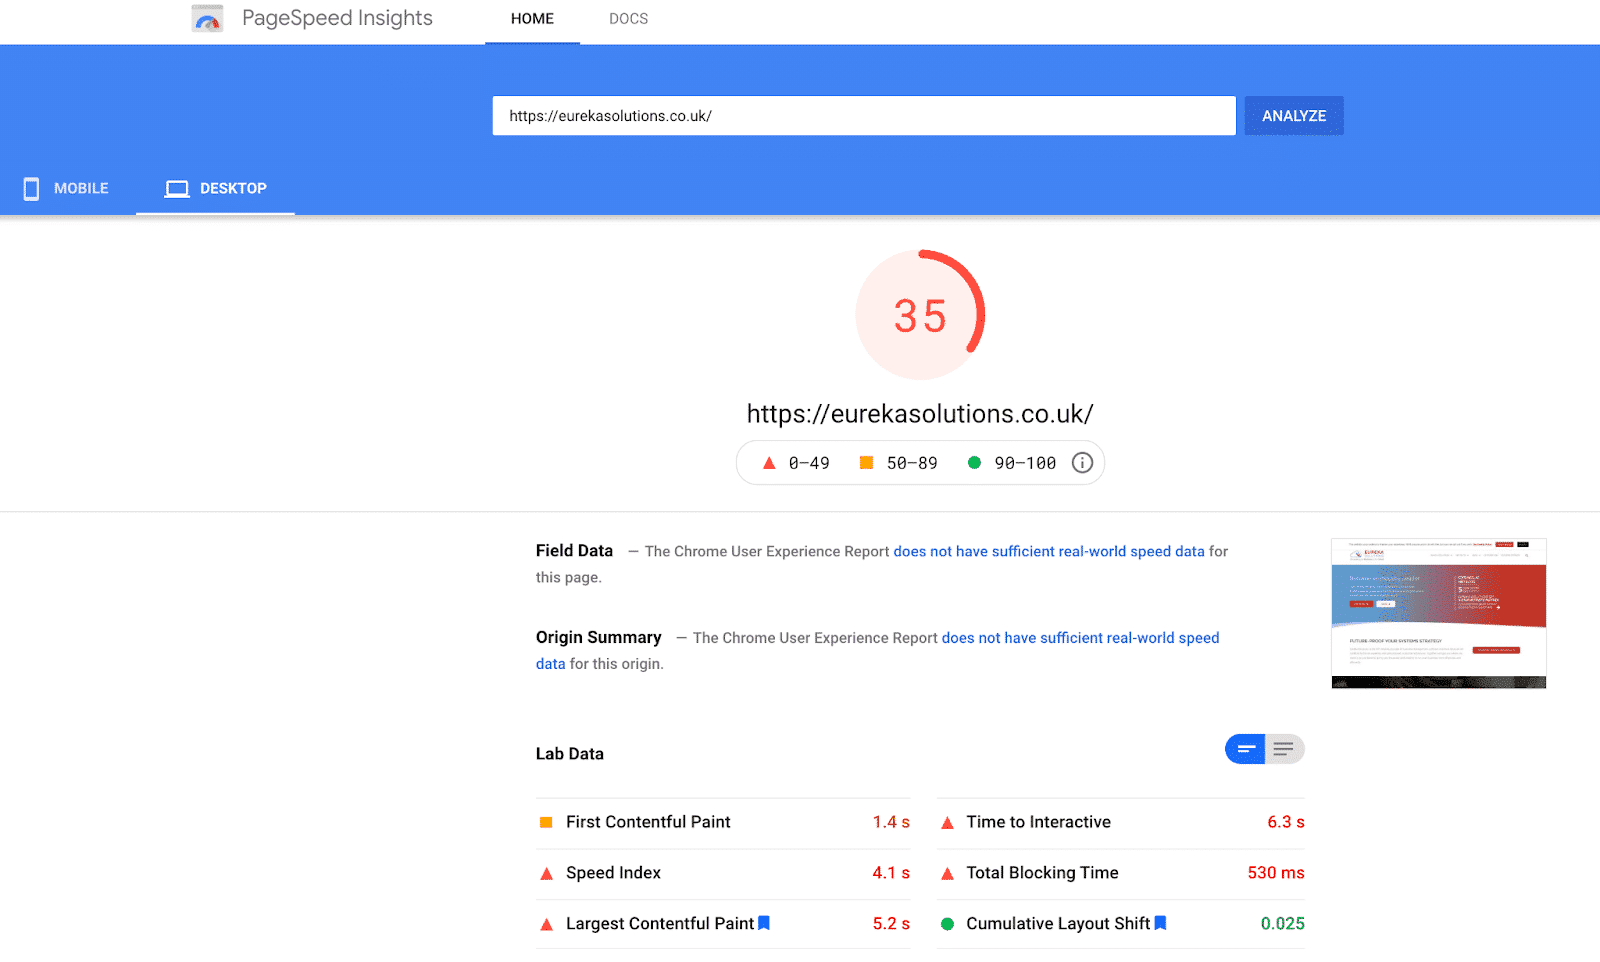 PageSpeed score from desktop